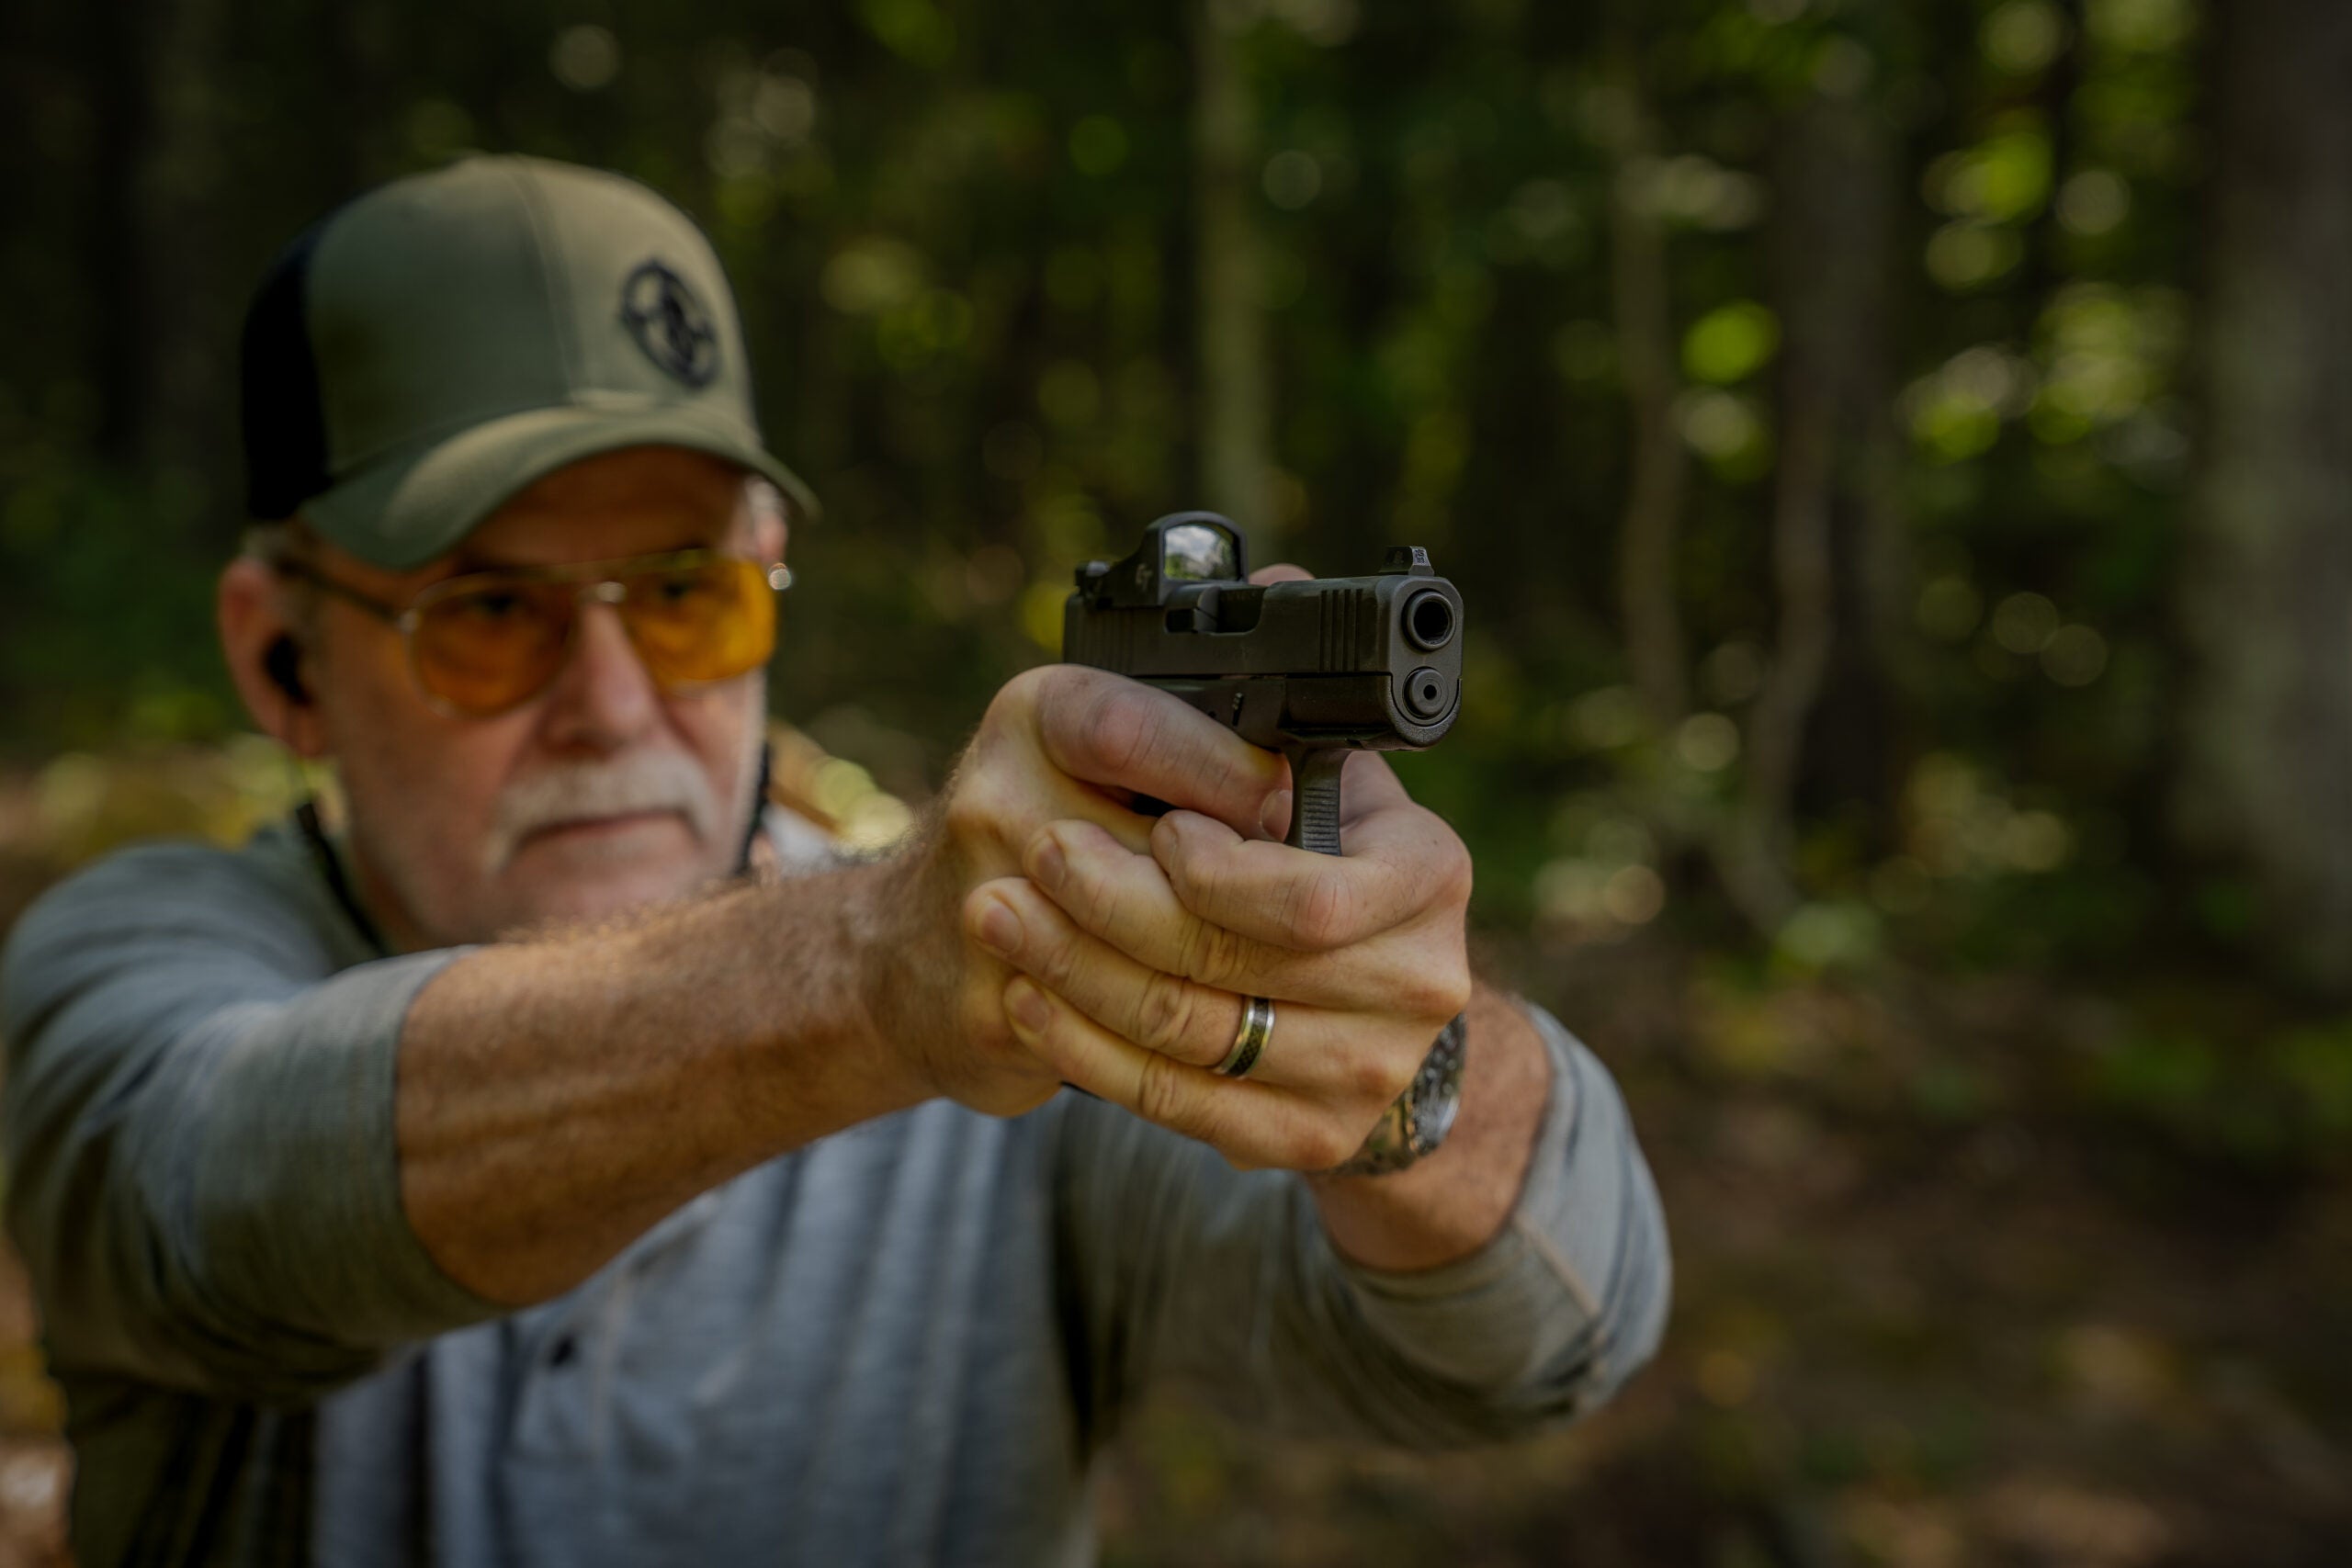 A shooter firing the Glock 43X MOS pistol on an outdoor range